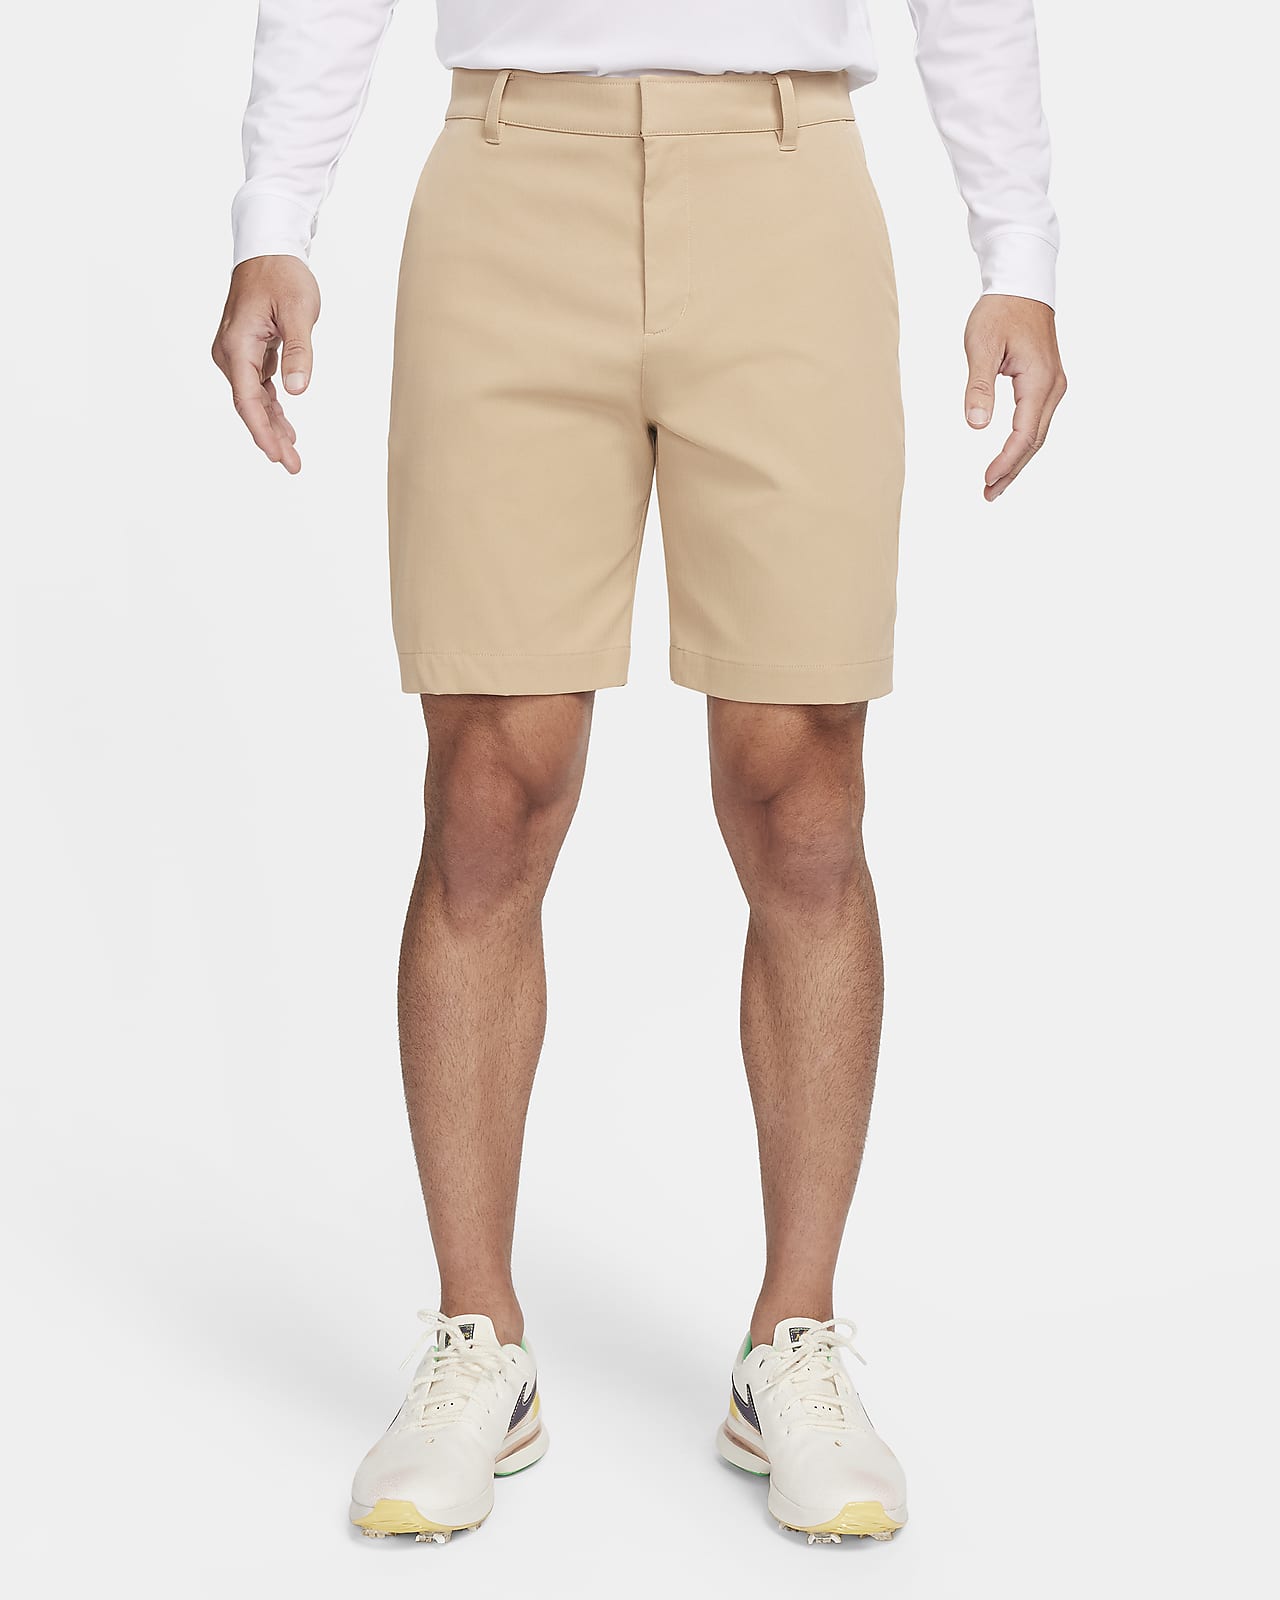 Nike Tour Pantalón corto chino de golf de 20 cm - Hombre